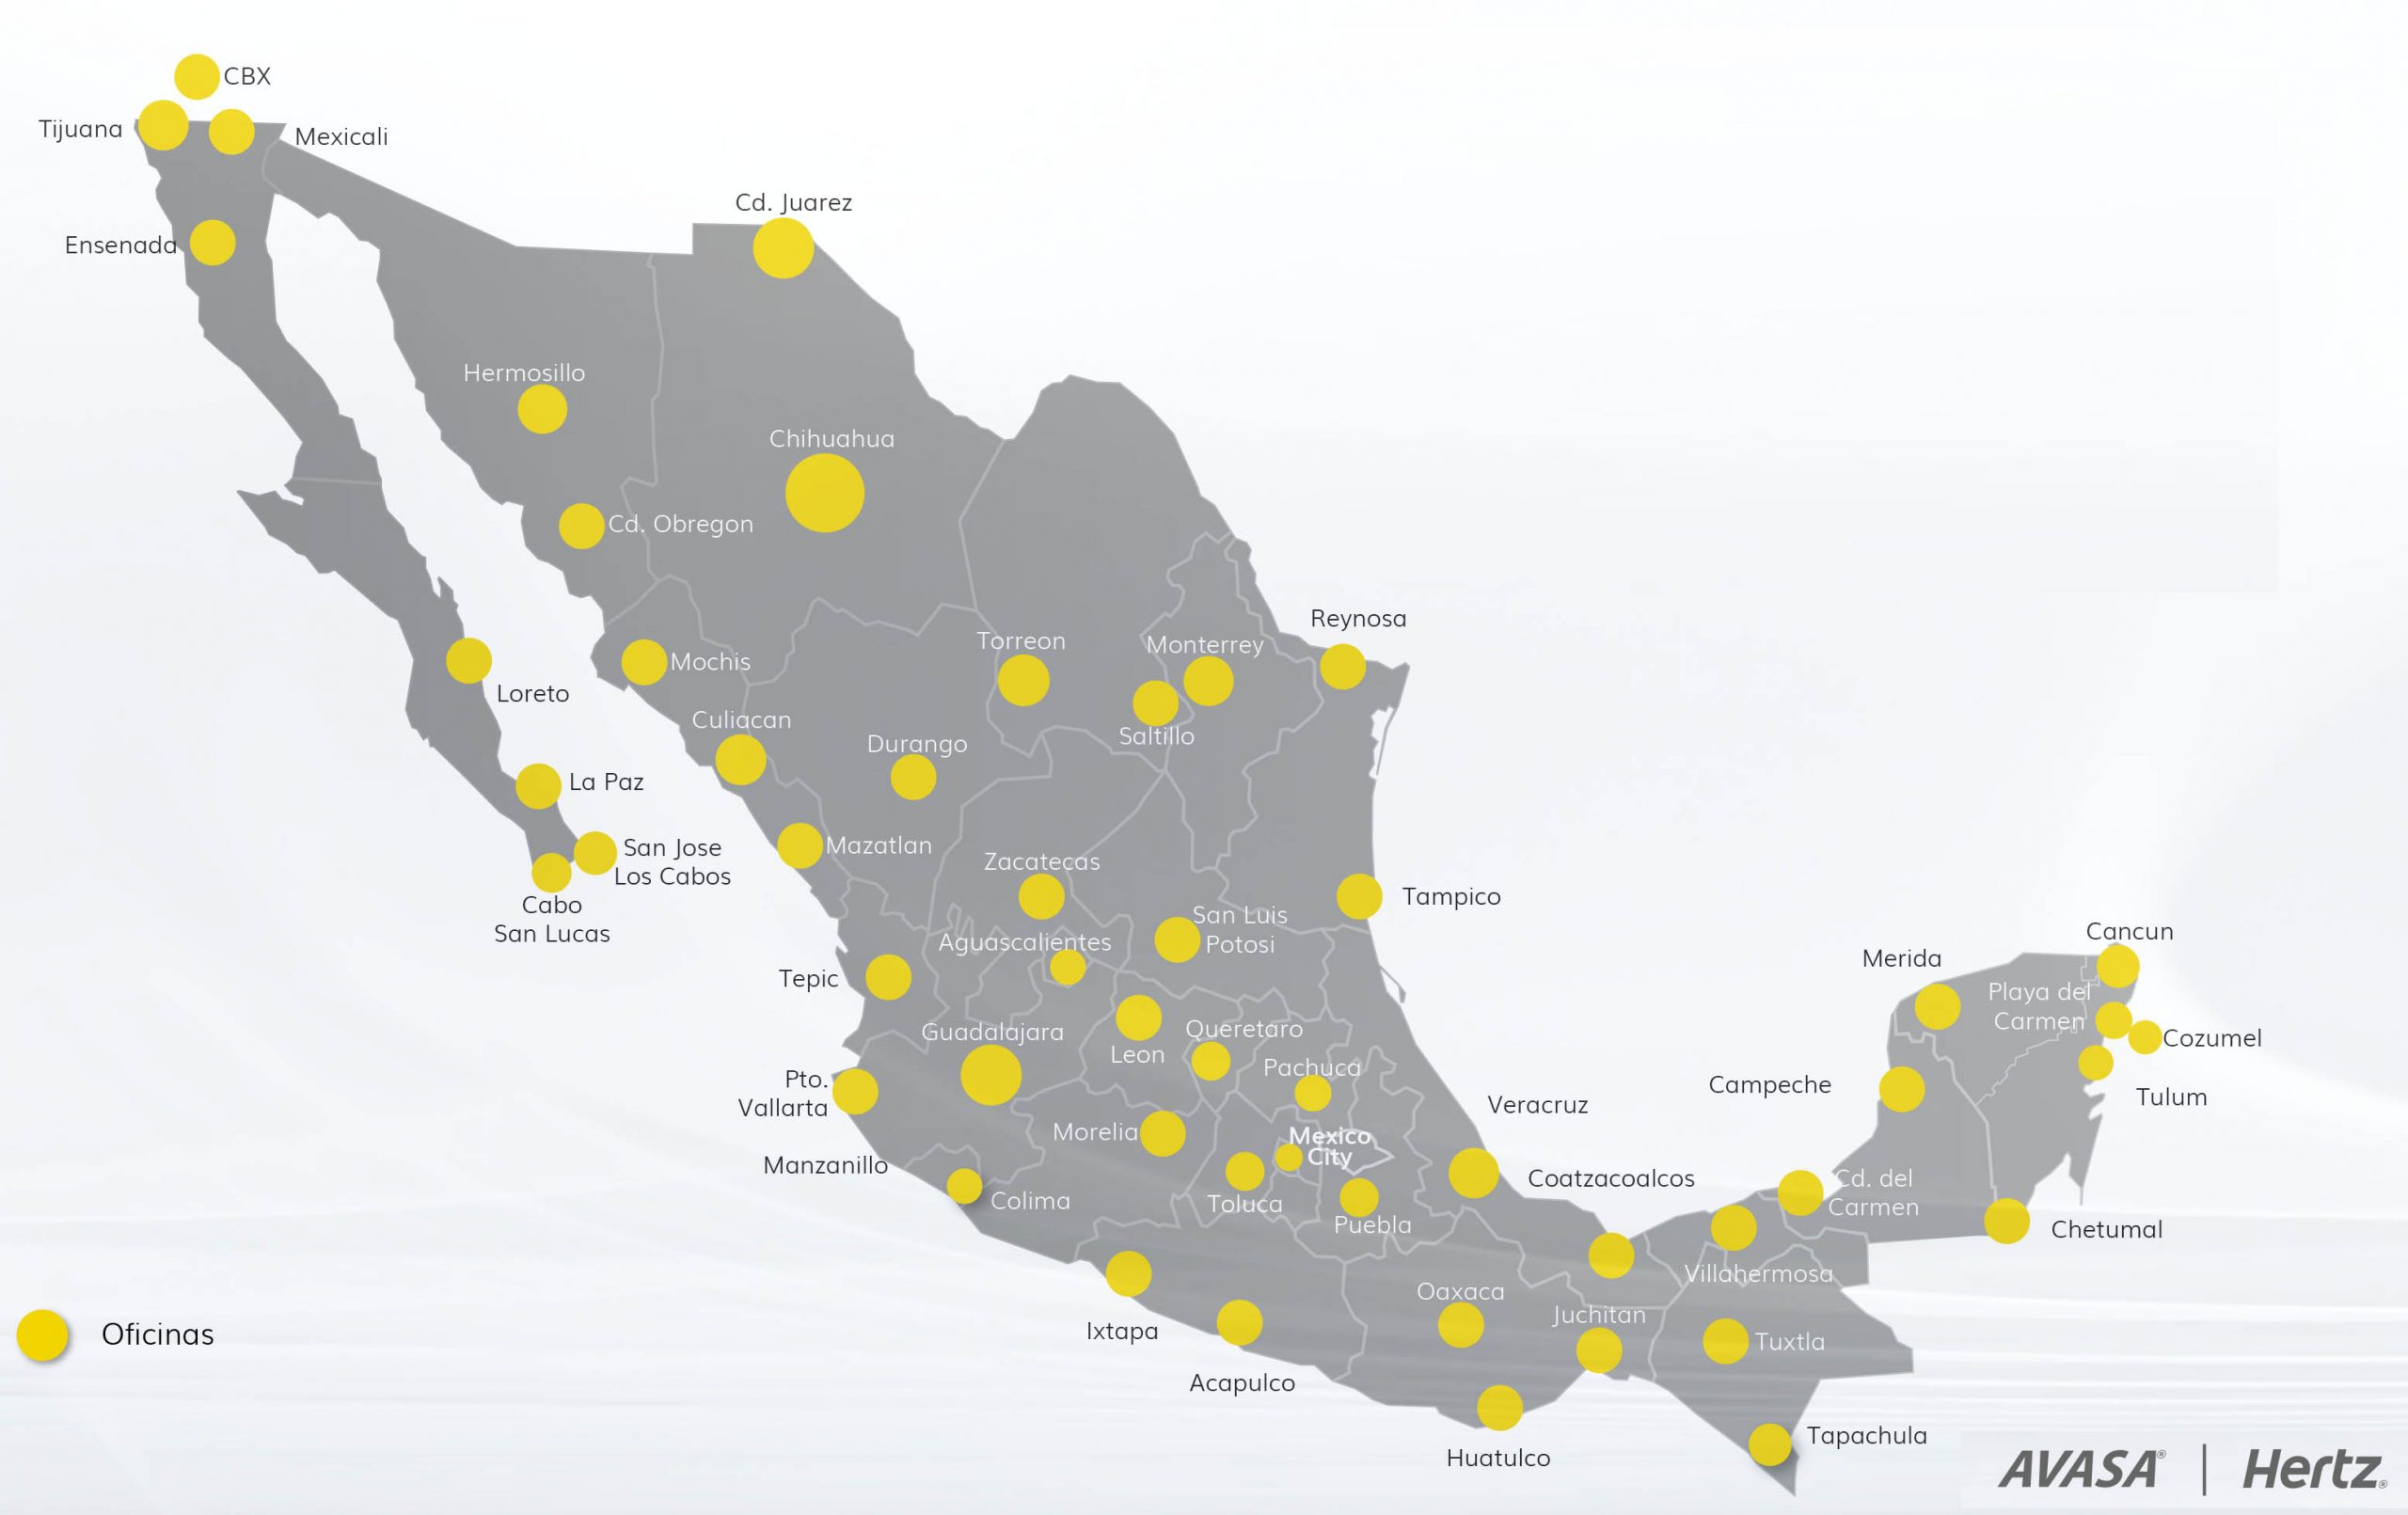 Presentacion Mapa Hertz Rental Car Locations in Mexico 